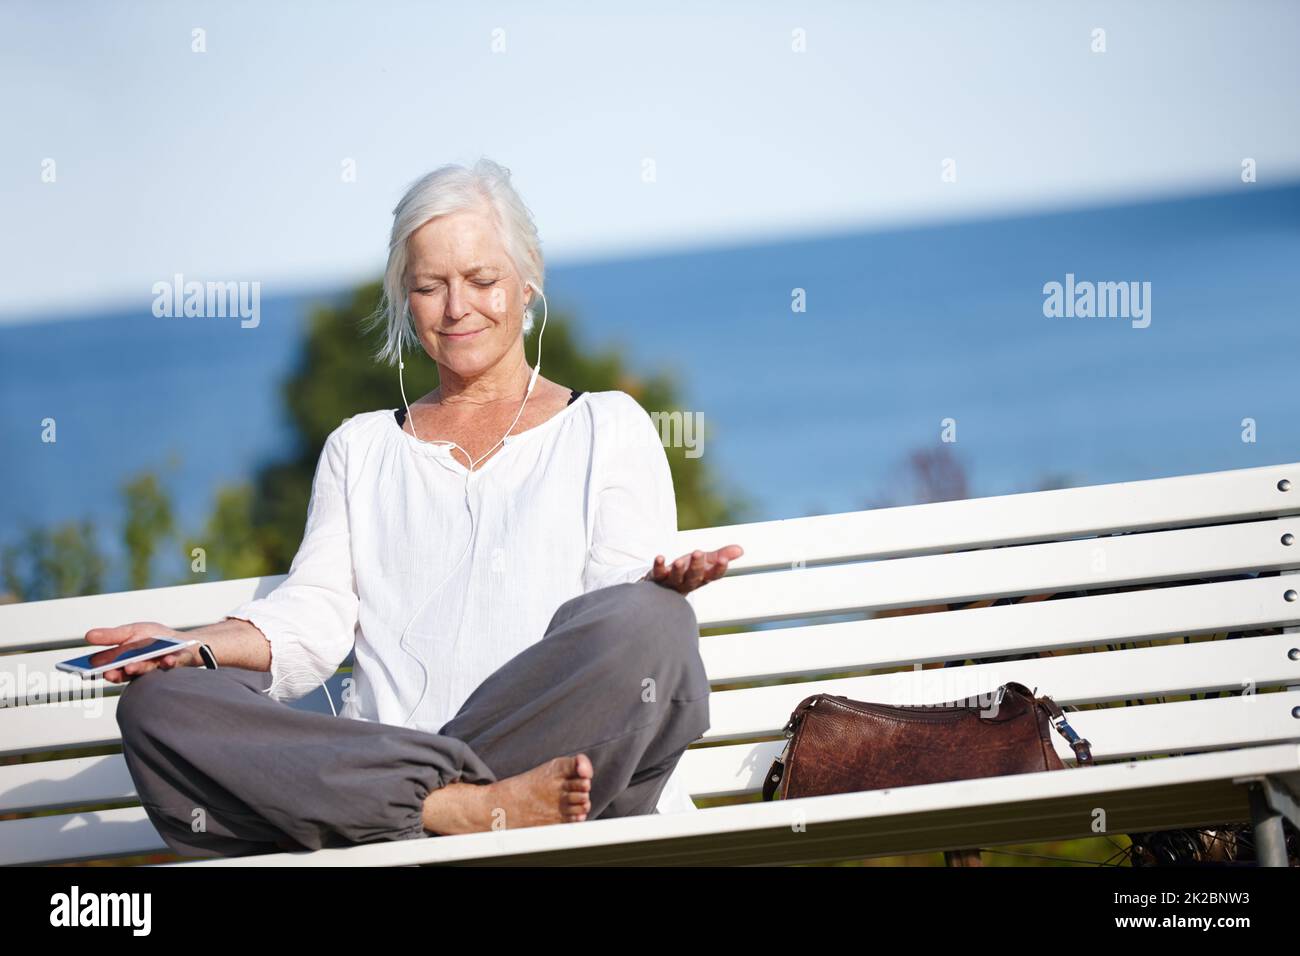 Entspannen Sie sich bei ruhiger Musik. Aufnahme einer reifen Frau, die während einer Entspannungsübung im Freien Musik hört. Stockfoto